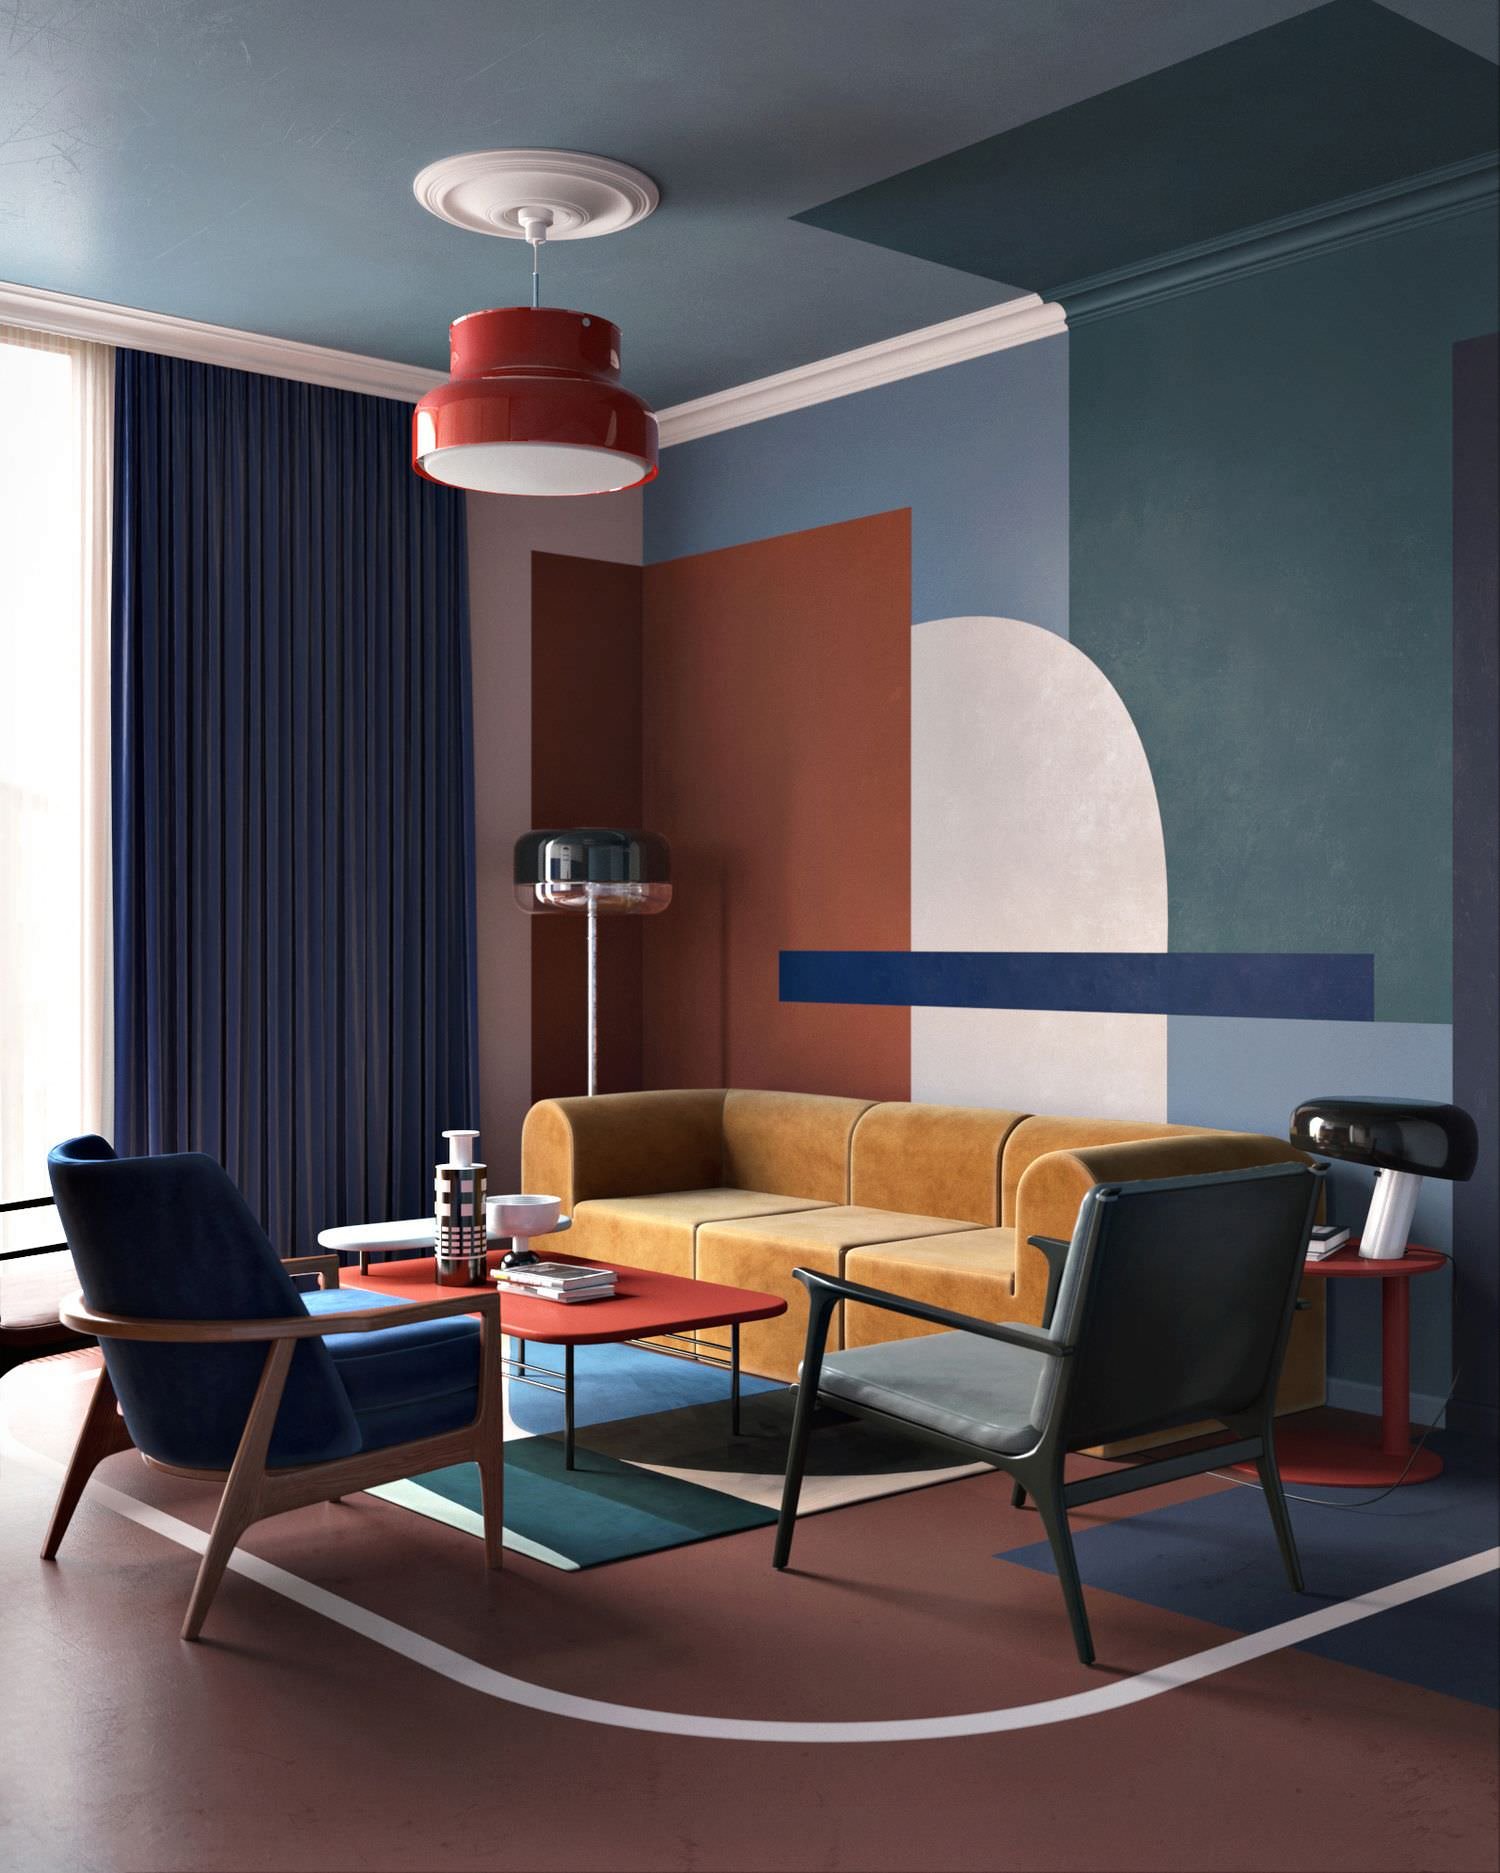 Soggiorno moderno con le pareti dipinte con un design particolare, intreccio di forme e colori - idee imbiancare salotto con pittura moderna e originale